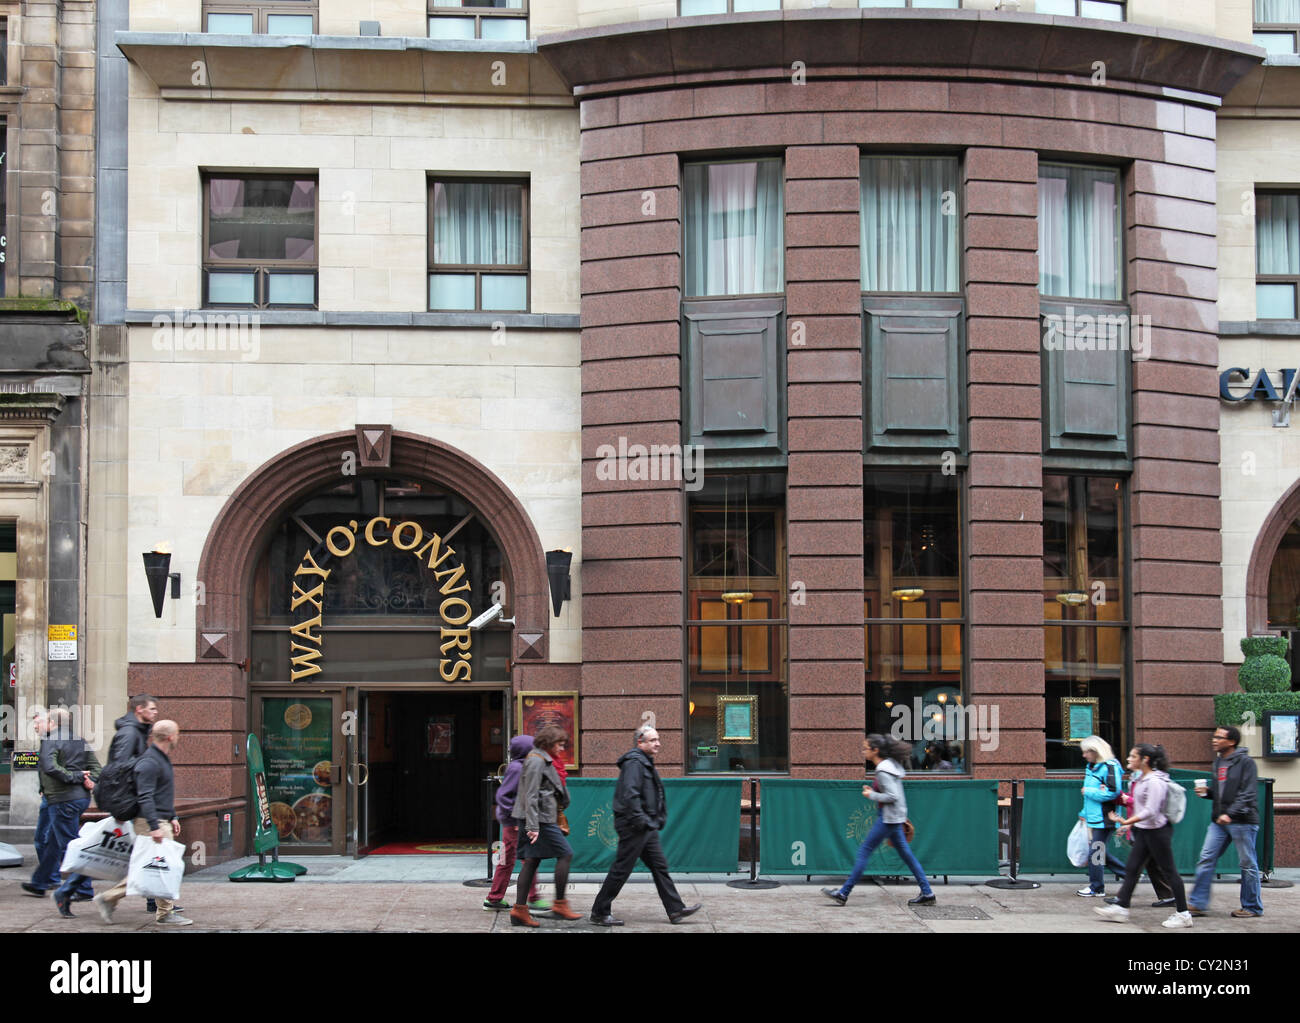 Façade de Waxy O'Connor's, l'une d'une petite chaîne de pubs irlandais, thème central Glasgow. Les piétons sont de passage sur le trottoir. Banque D'Images